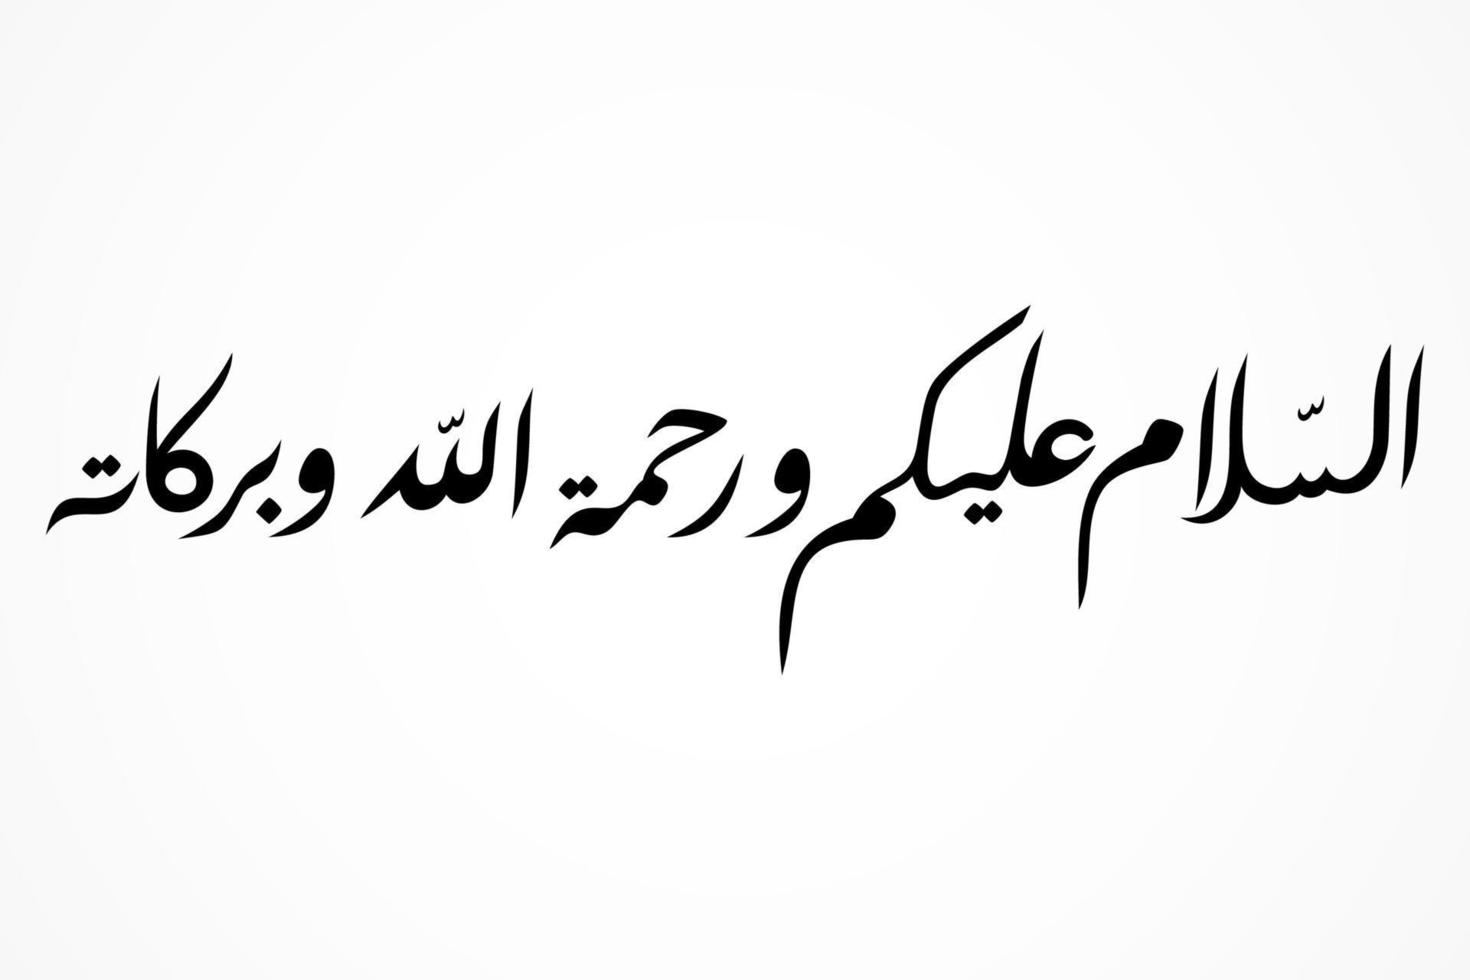 la calligraphie assalamu alaikum signifie que la paix soit sur vous vecteur